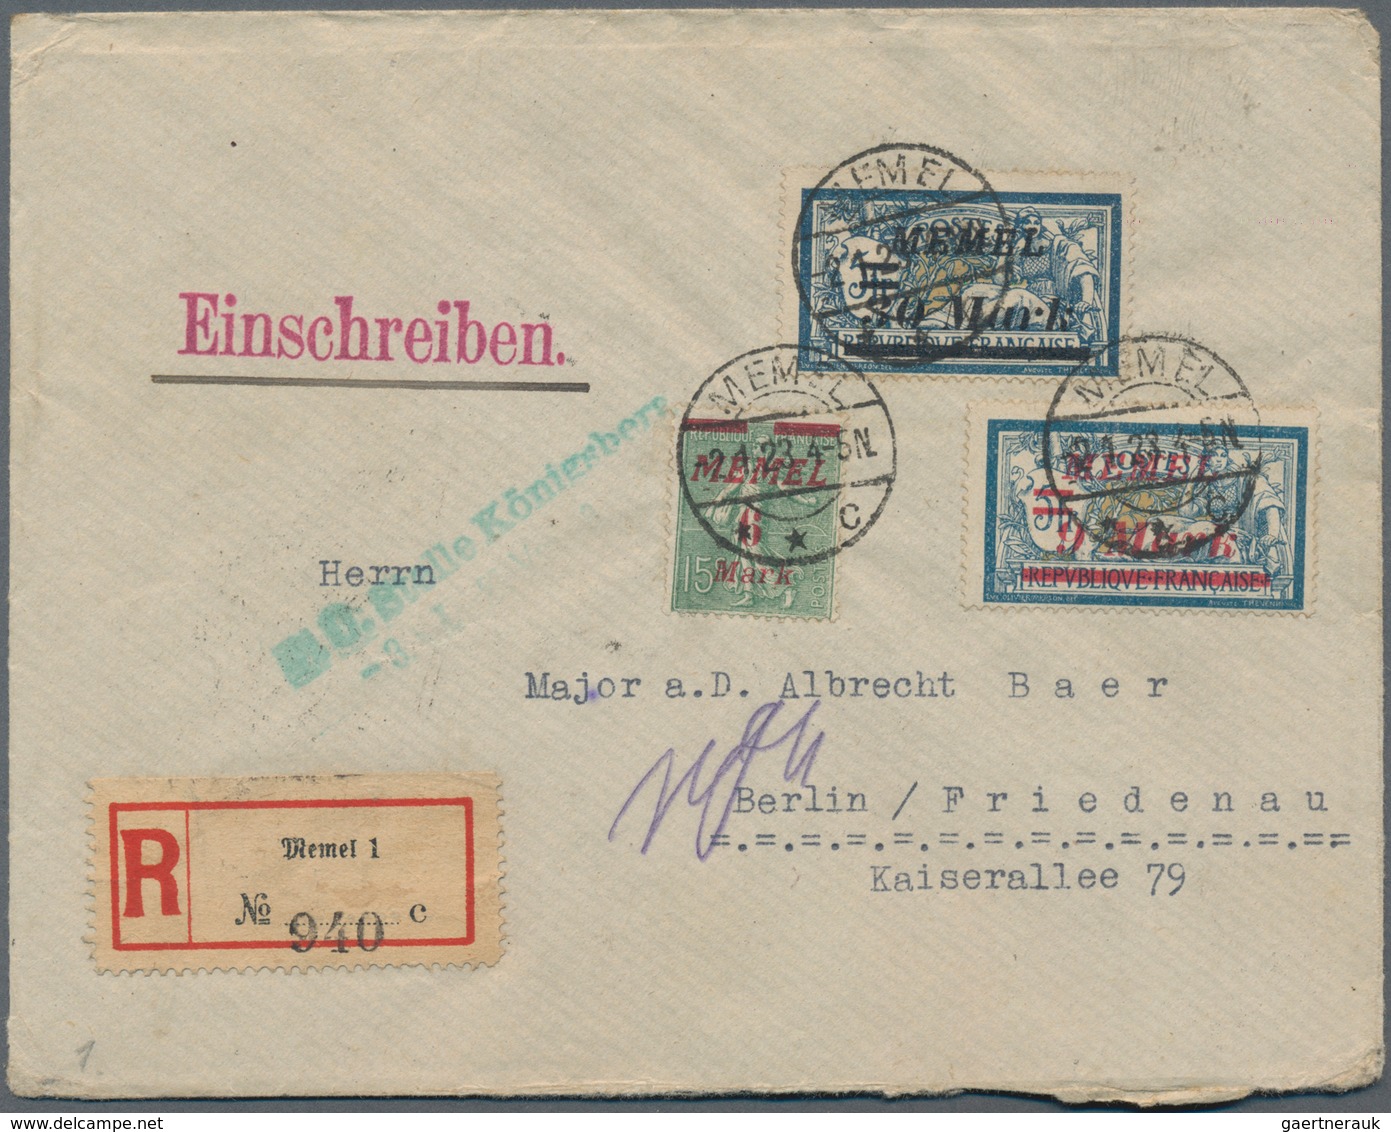 Deutsches Reich - Nebengebiete: 1900/1957 (ca.), vielseitige Partie von ca. 120 Briefen/Karten/Ganzs